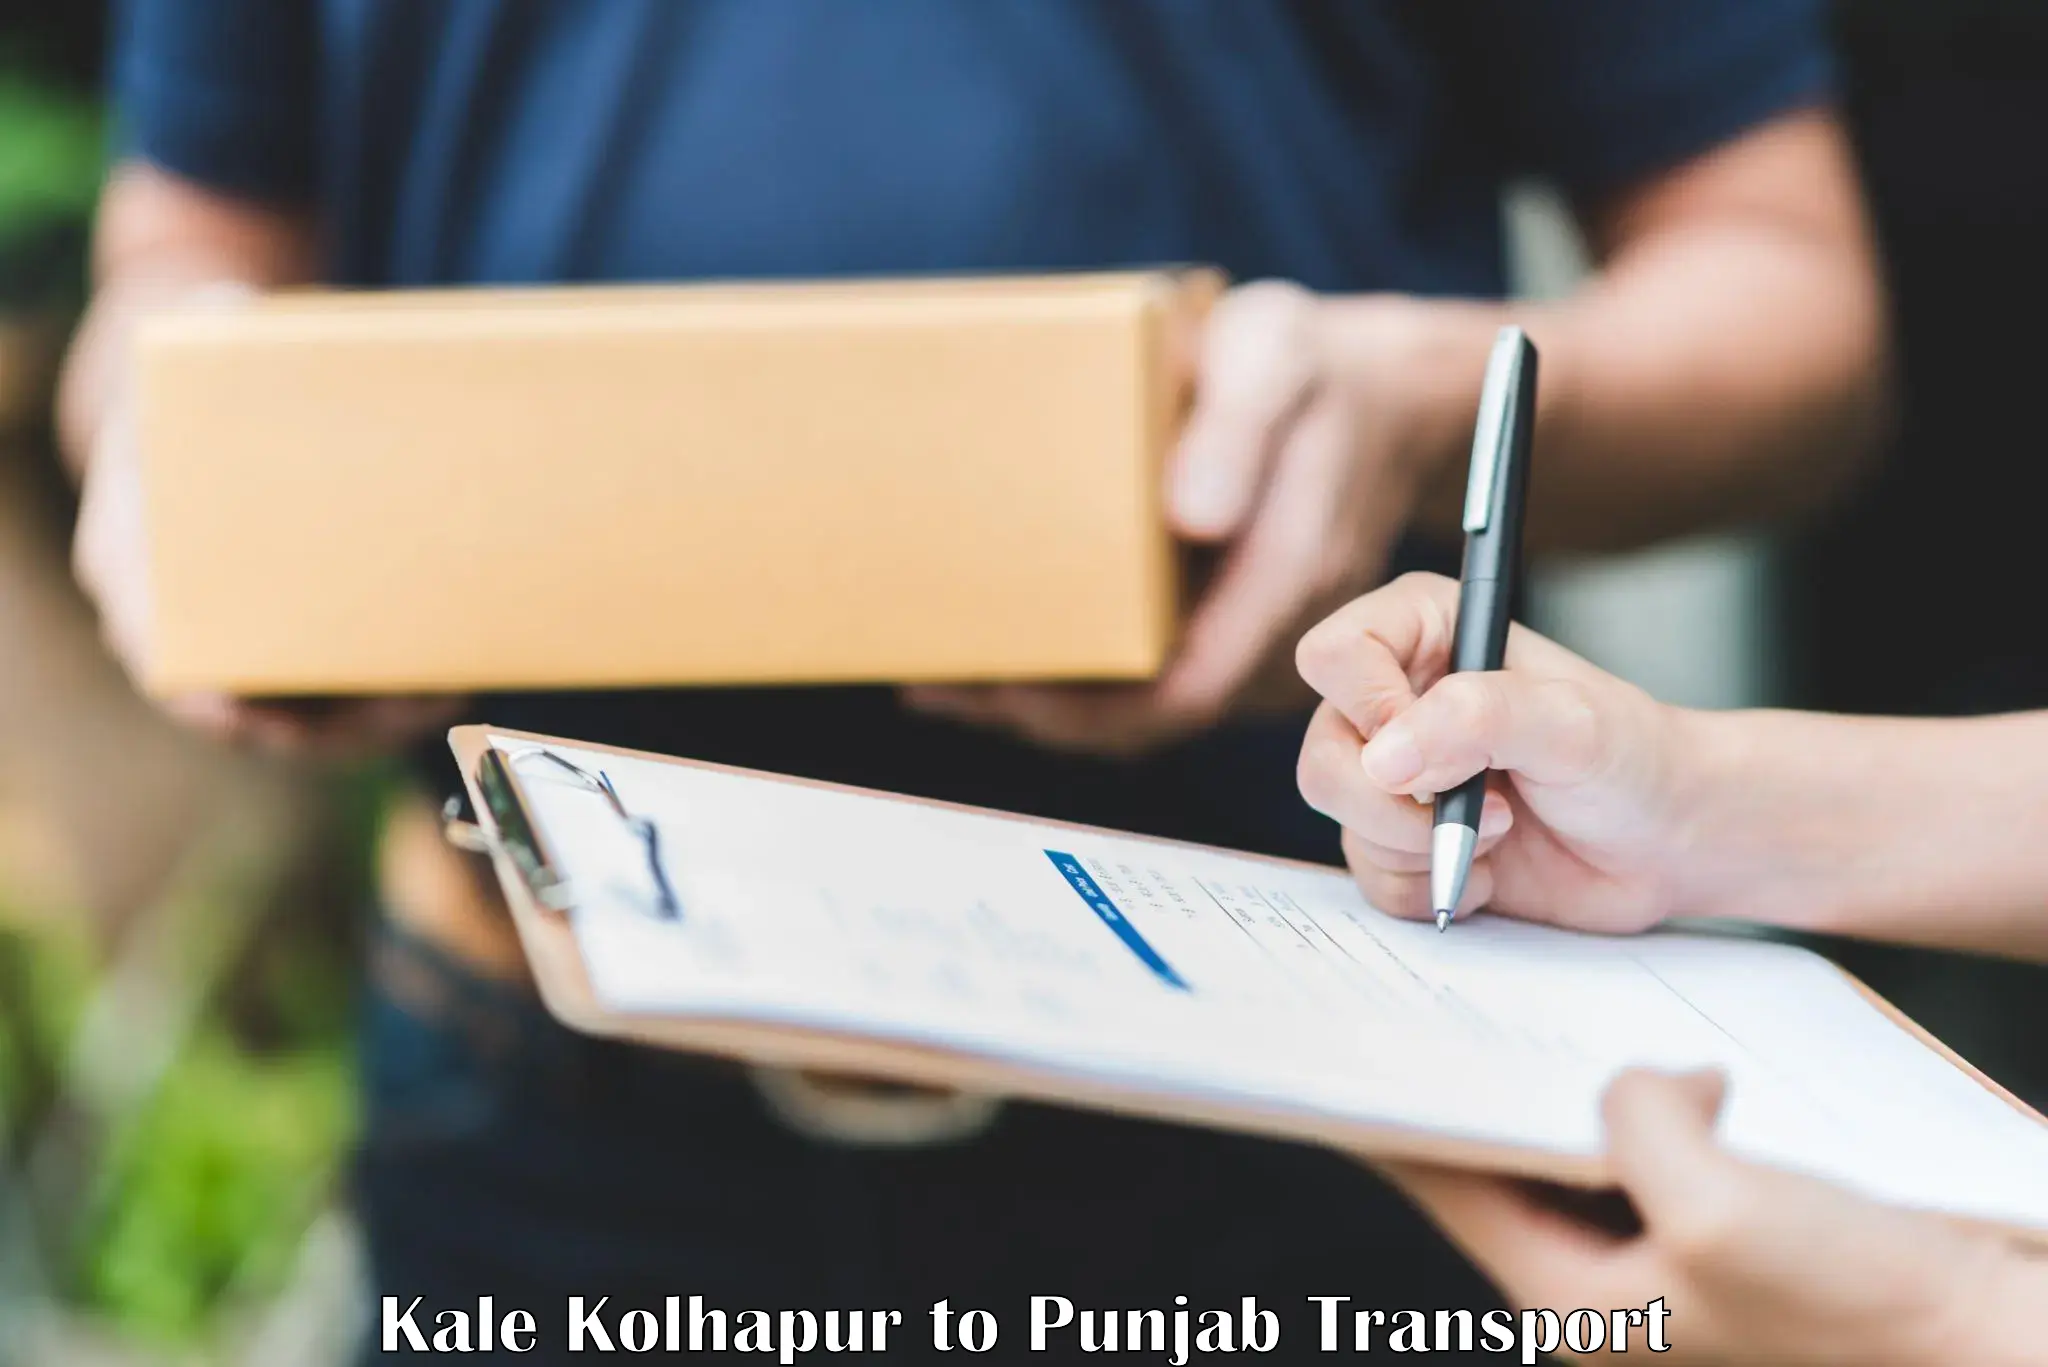 Nationwide transport services Kale Kolhapur to Ropar